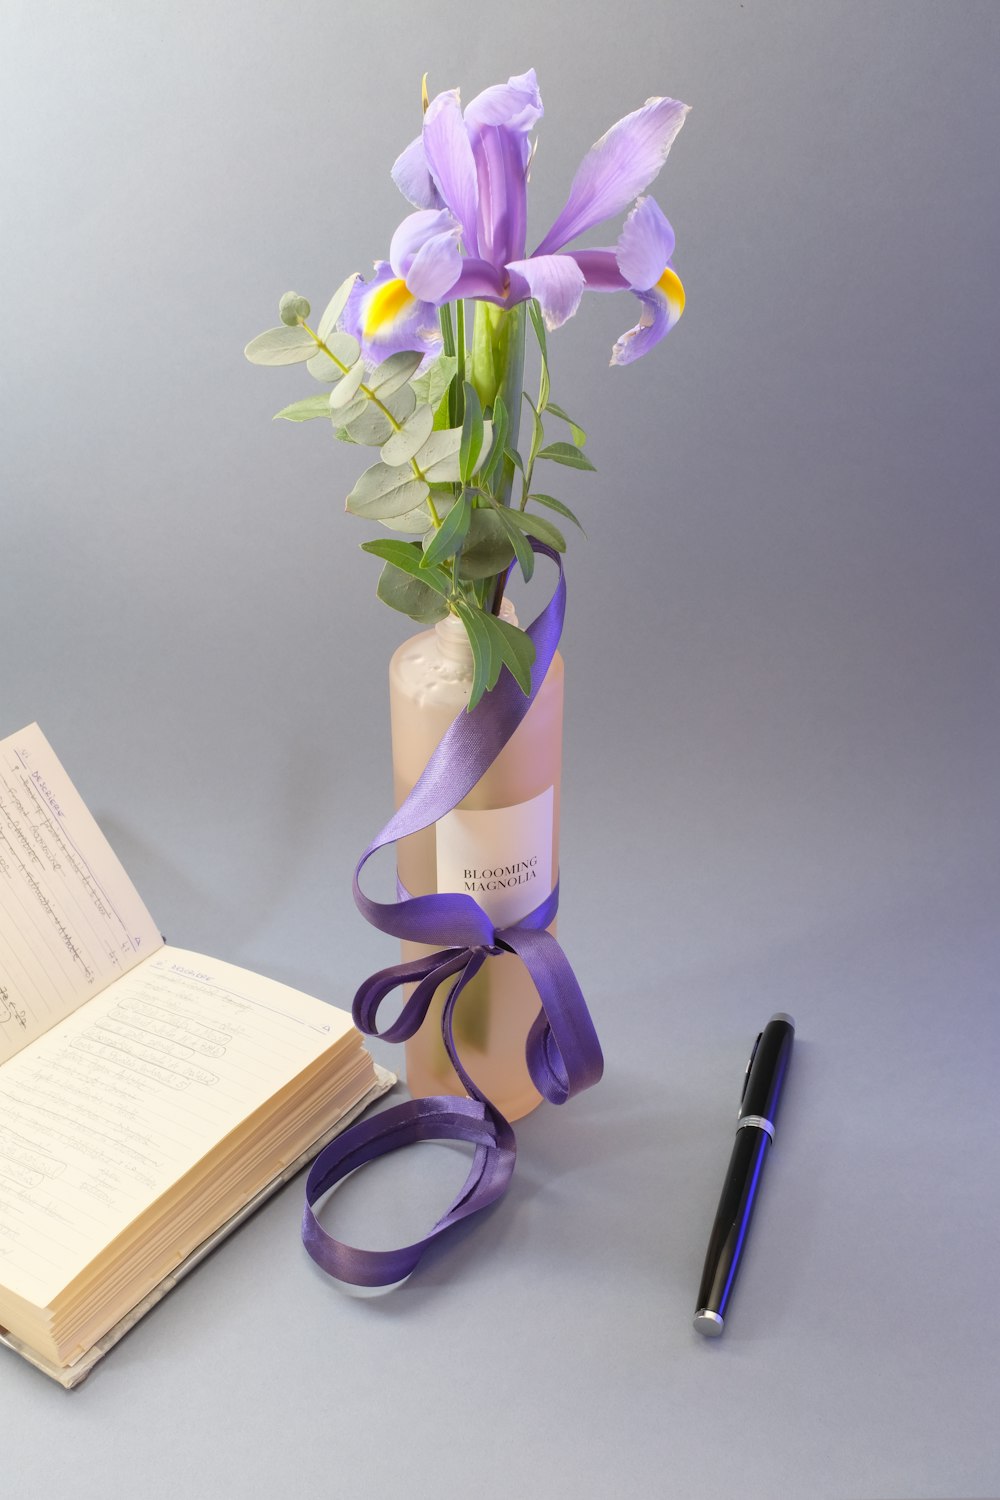 purple flowers in vase on table